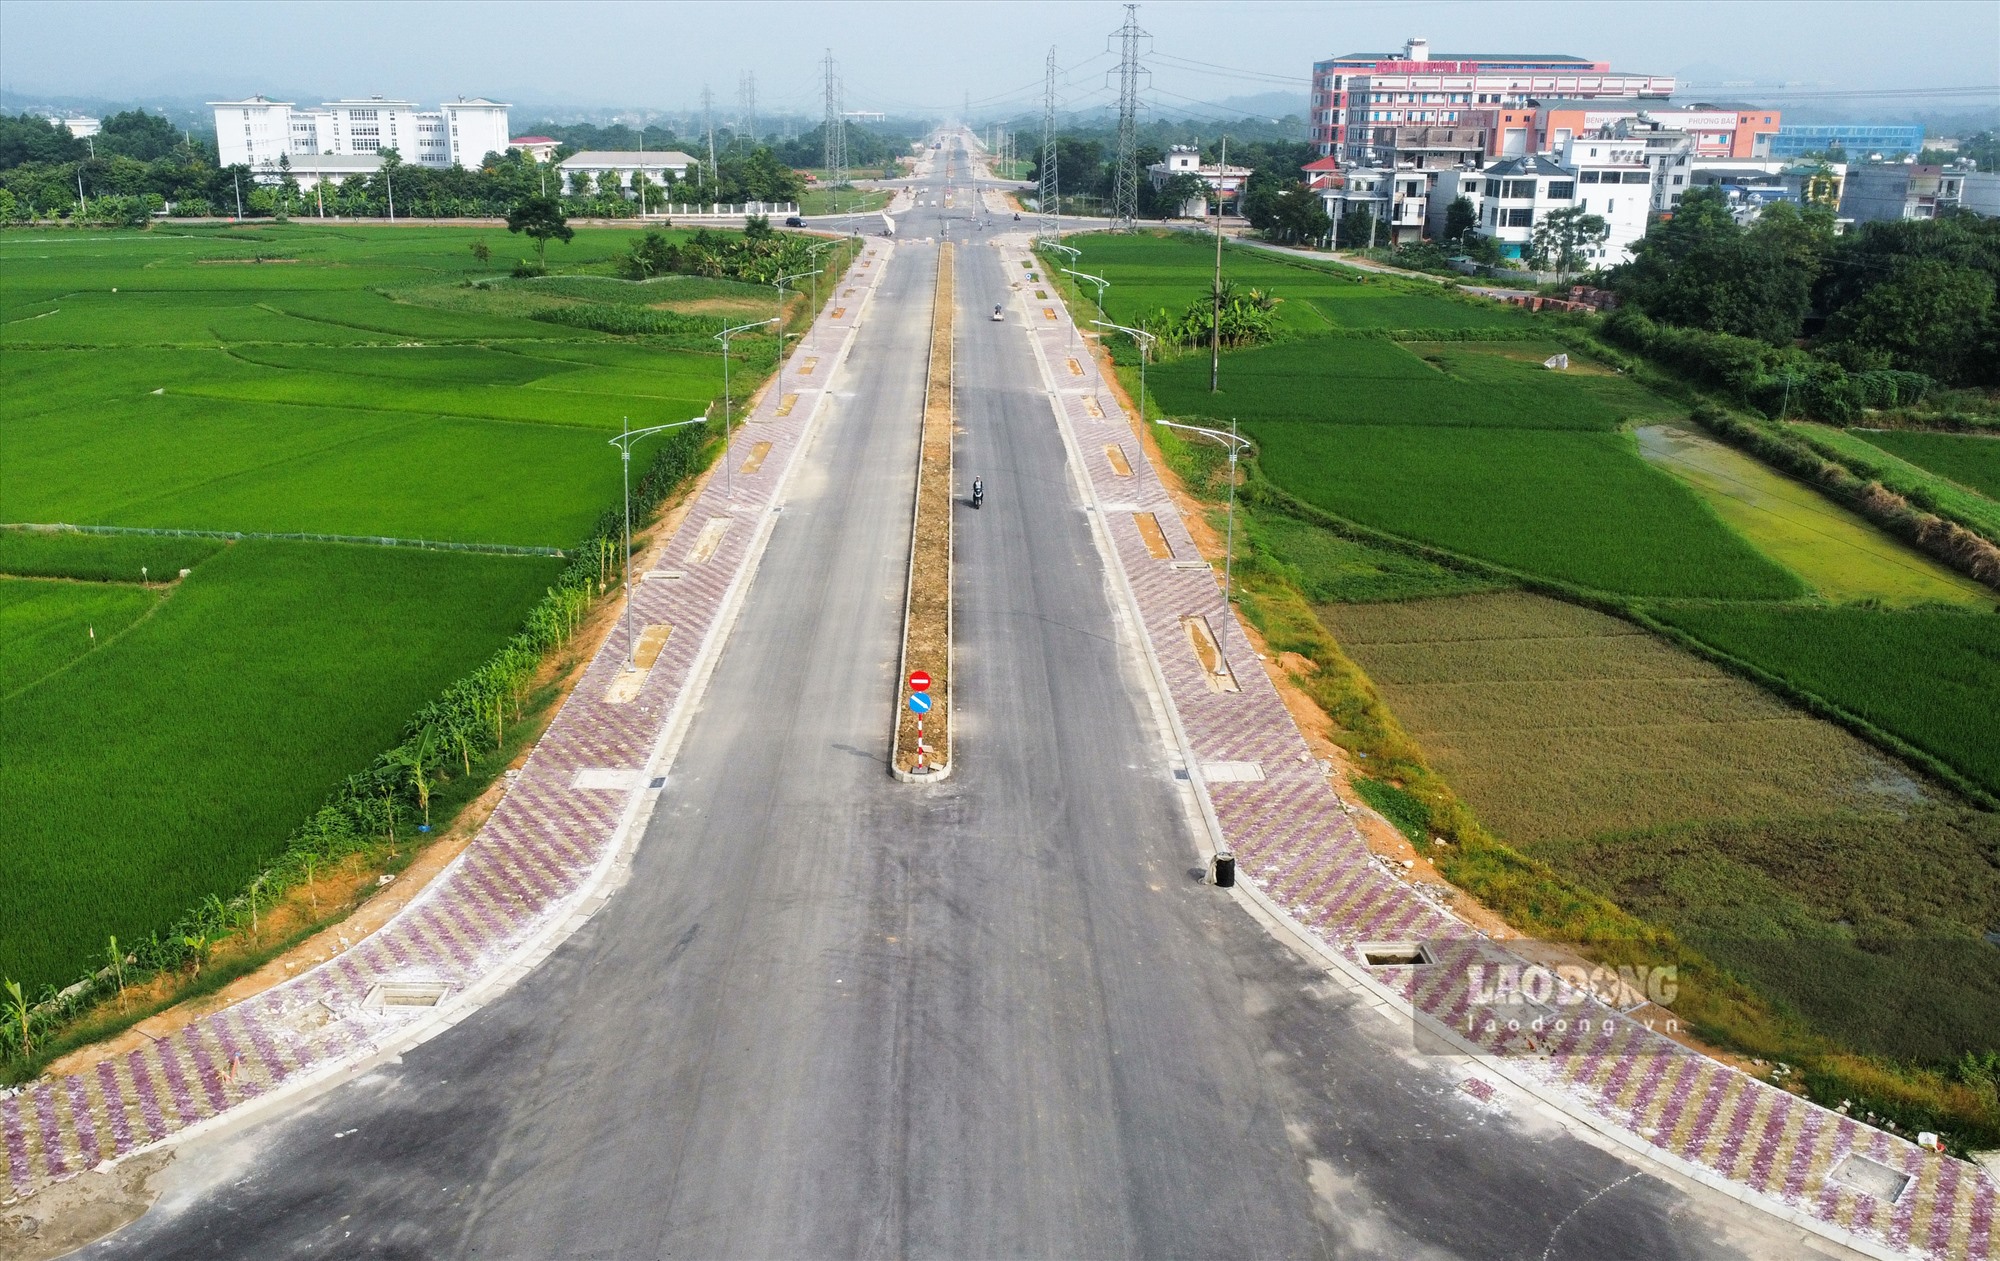 Theo Ban Quản lý dự án đầu tư xây dựng các công trình giao thông tỉnh Tuyên Quang, tuyến đường này sẽ góp phần từng bước hoàn thiện hệ thống giao thông đồng bộ theo quy hoạch mạng lưới giao thông tỉnh Tuyên Quang đến năm 2030. Đây là công trình trọng điểm của tỉnh và nằm trong chuỗi sự kiện chào mừng kỷ niệm 190 năm thành lập tỉnh Tuyên Quang. Vì vậy, tiến độ và chất lượng của dự án được chủ đầu tư đặc biệt quan tâm, giám sát chặt chẽ.